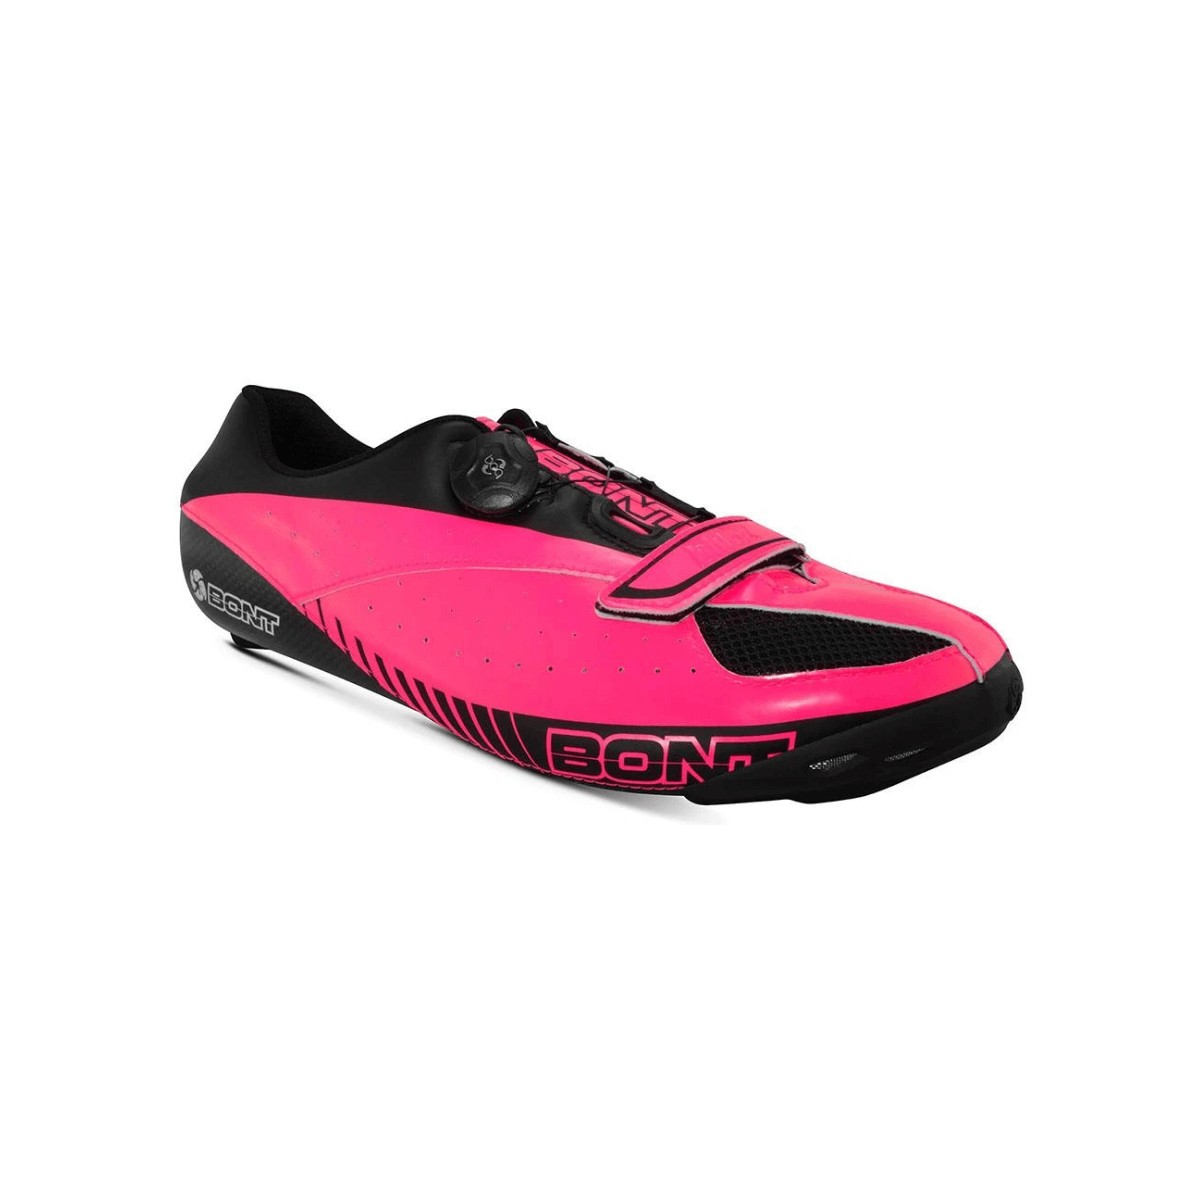 Bont Blitz Rennradschuhe Pink Schwarz, Größe 37 - EUR